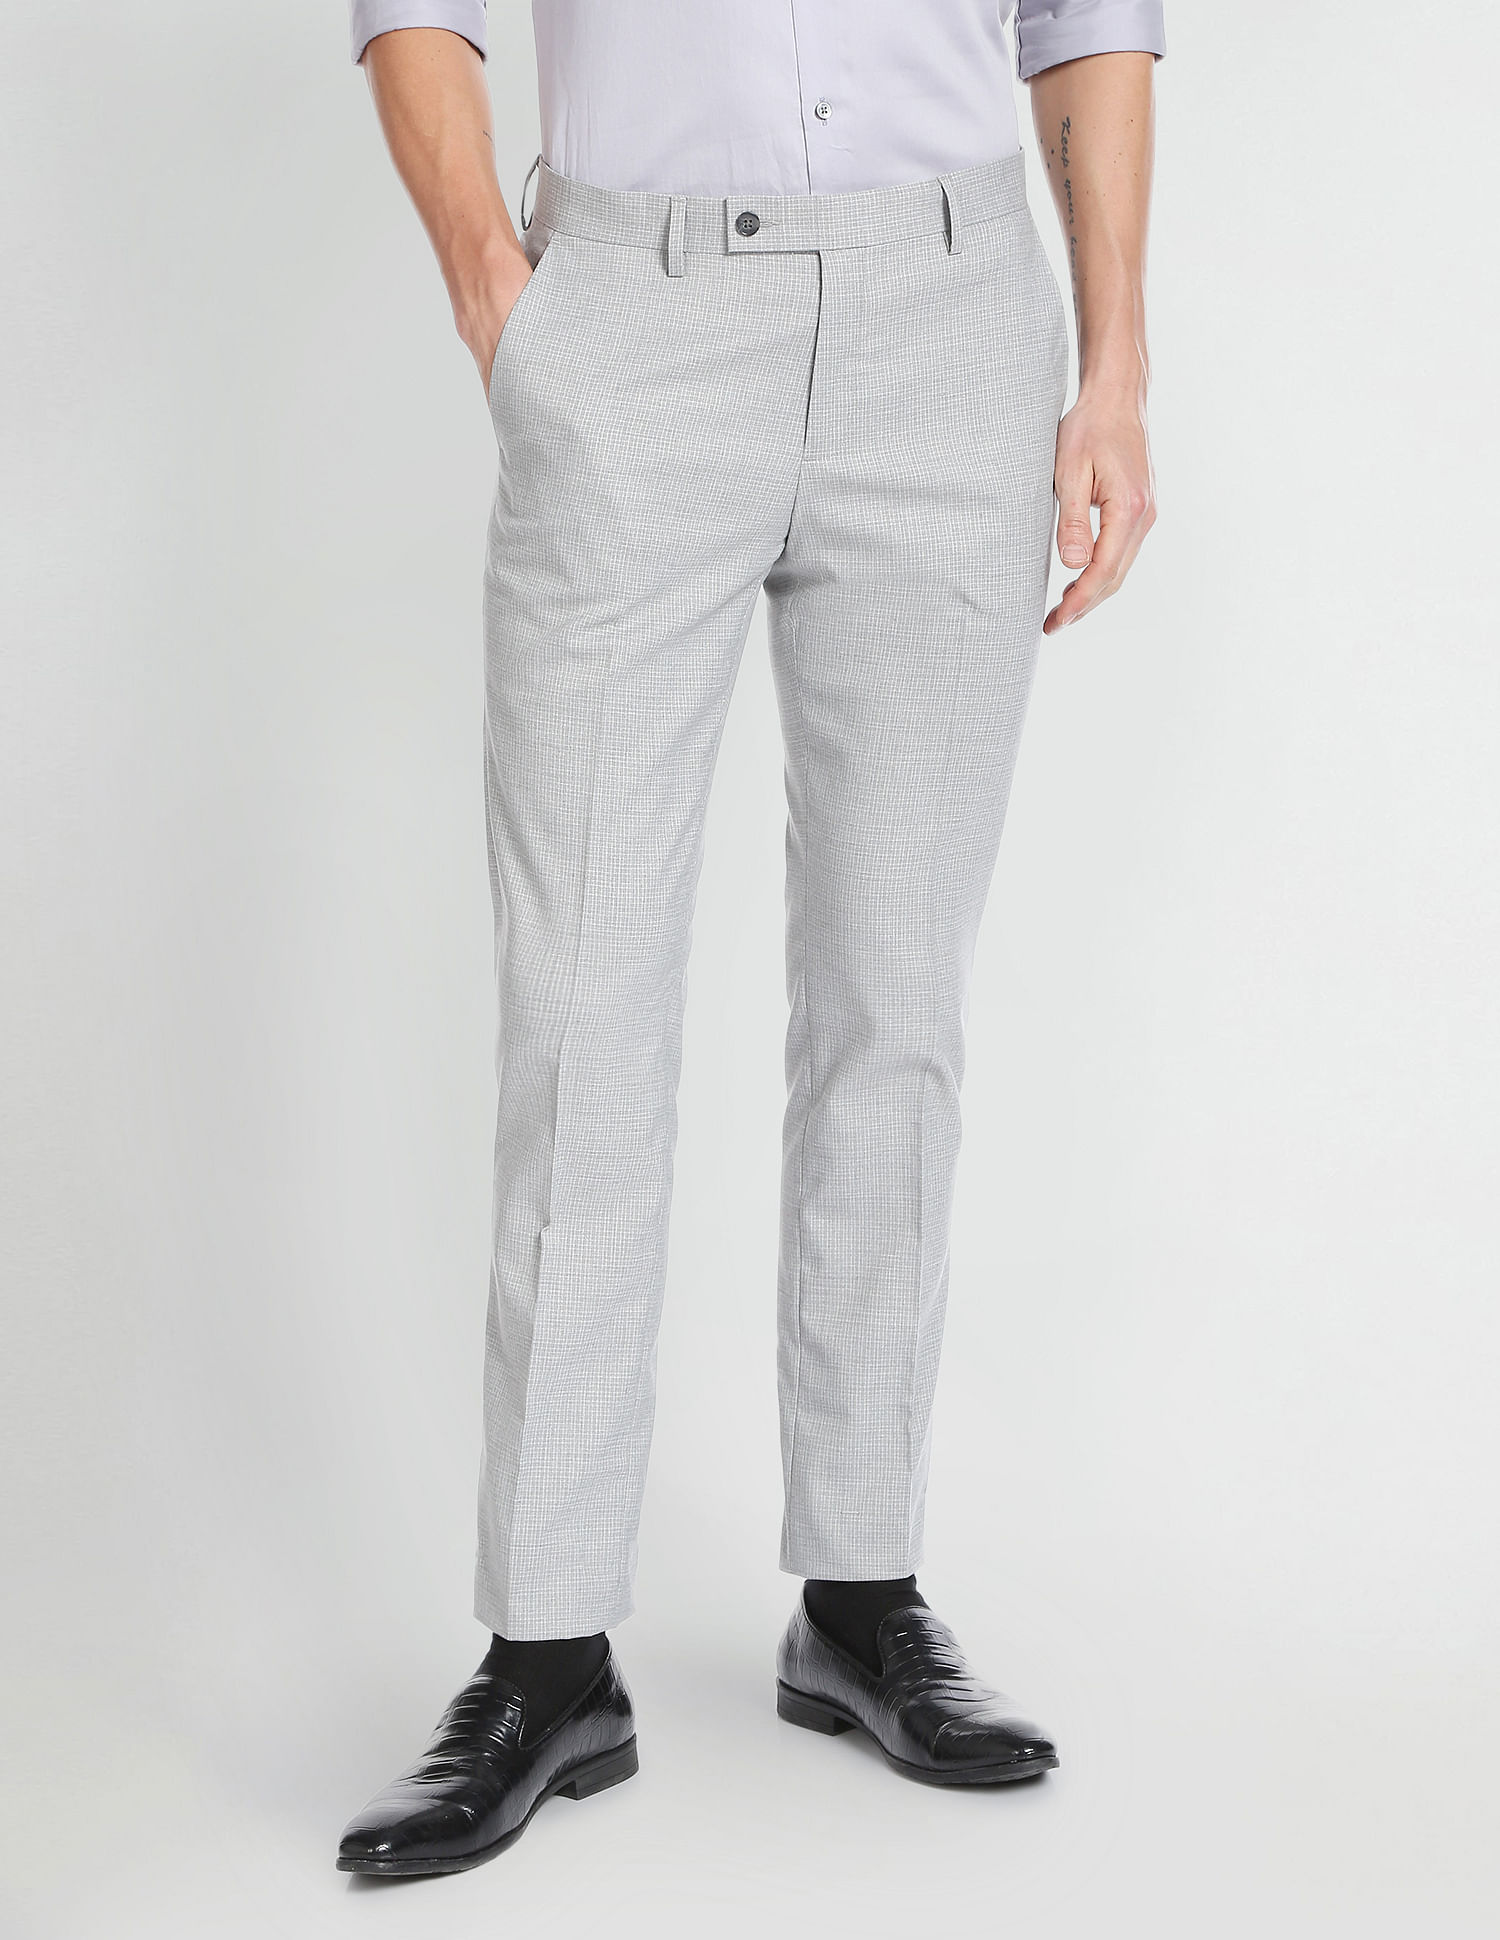 Lars Amadeus Men's Checked Prom Trousers Formal Plaid Suit Pants -  Walmart.com